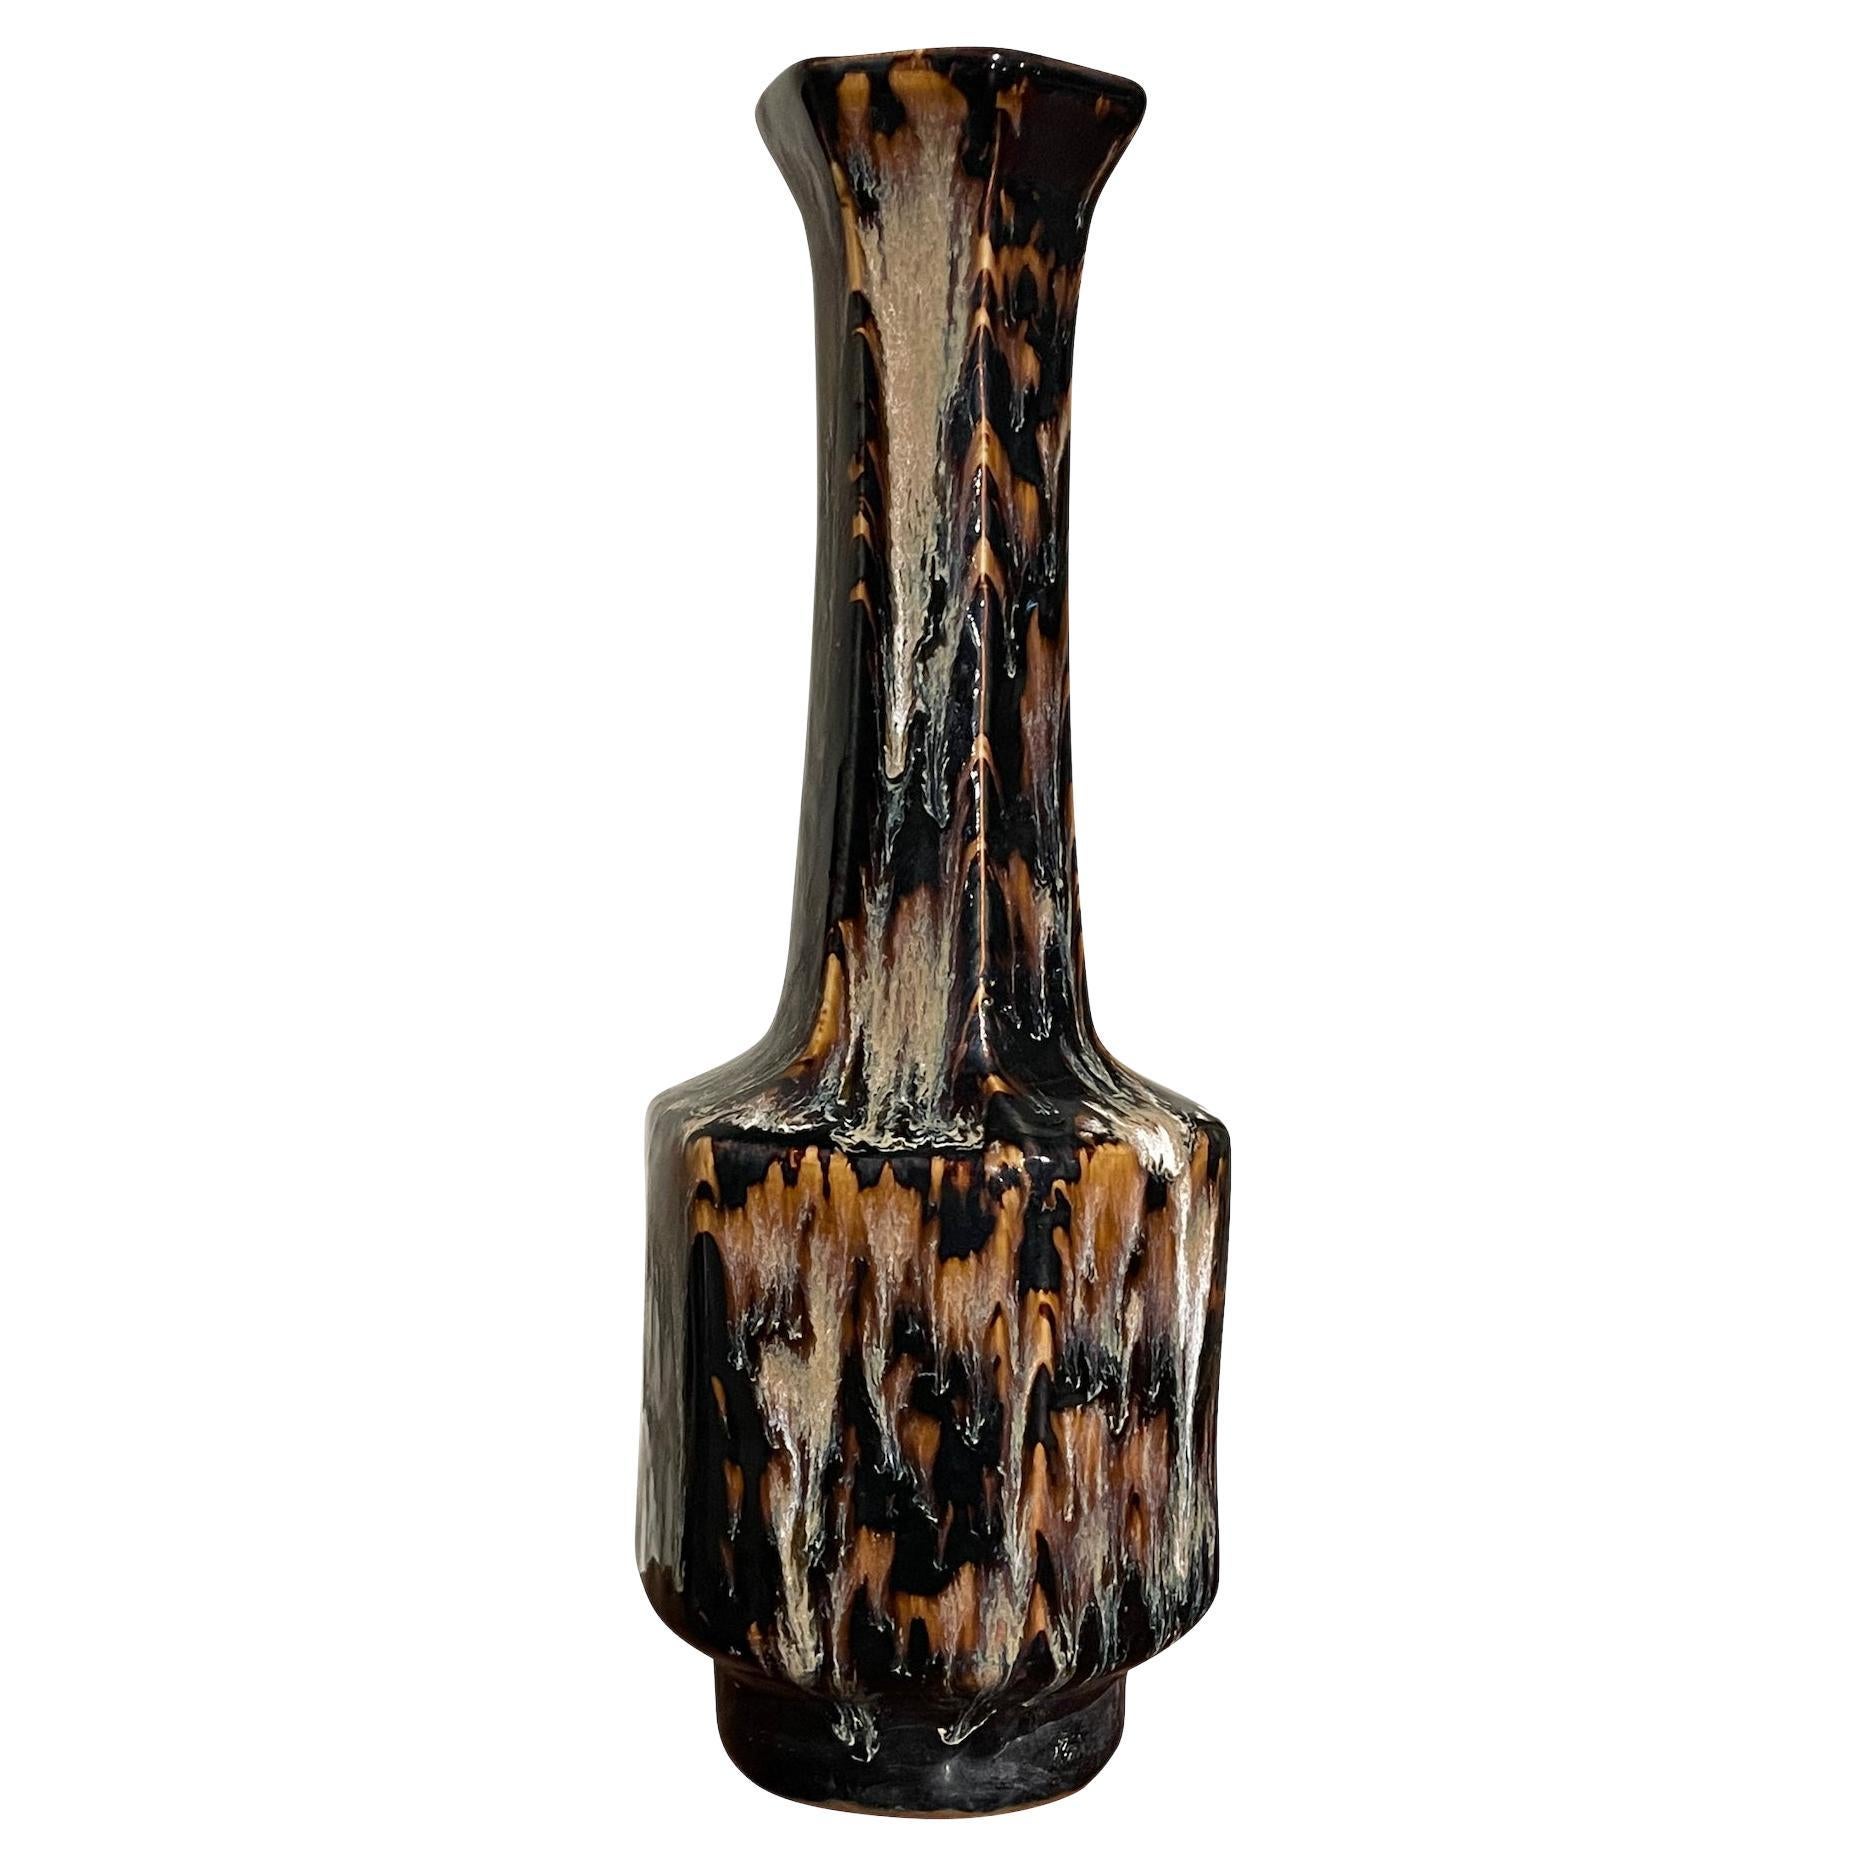 Grand vase à glaçure émaillée noire, crème et brune, Chine, contemporain